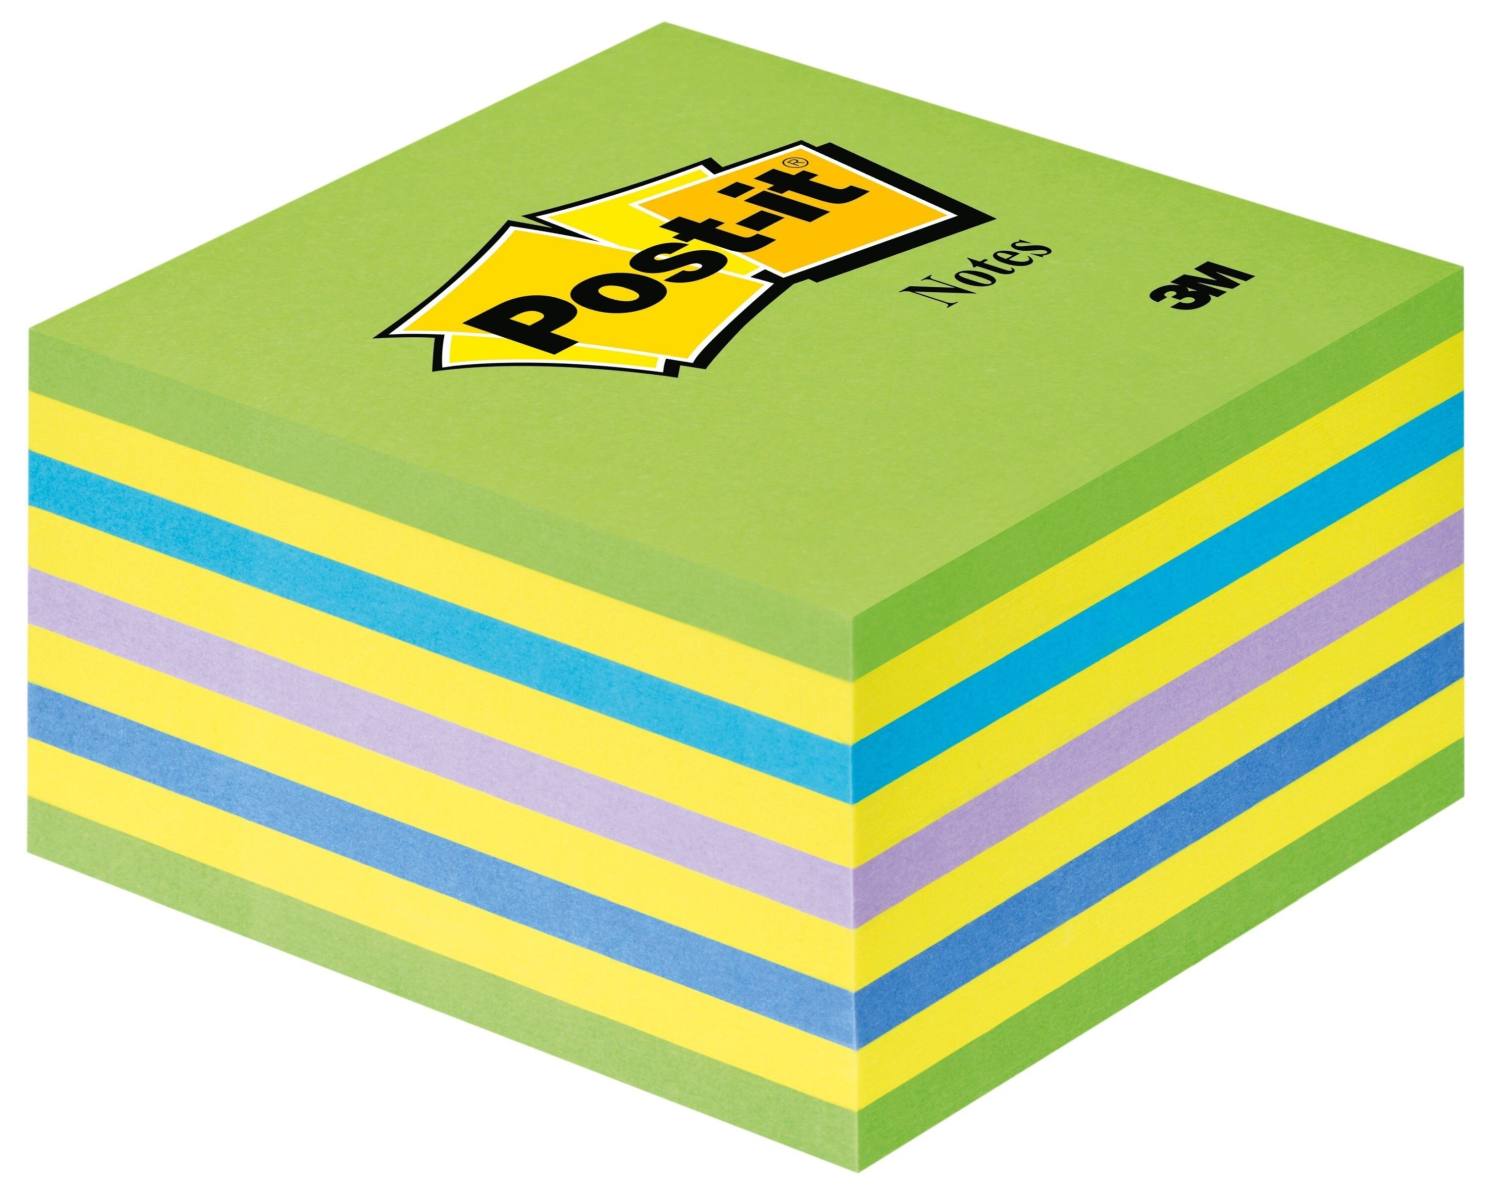 3M Post-it Kubus 2028NB, 76 mm x 76 mm, geel, neon blauw, neon groen, 1 kubus van 450 vellen